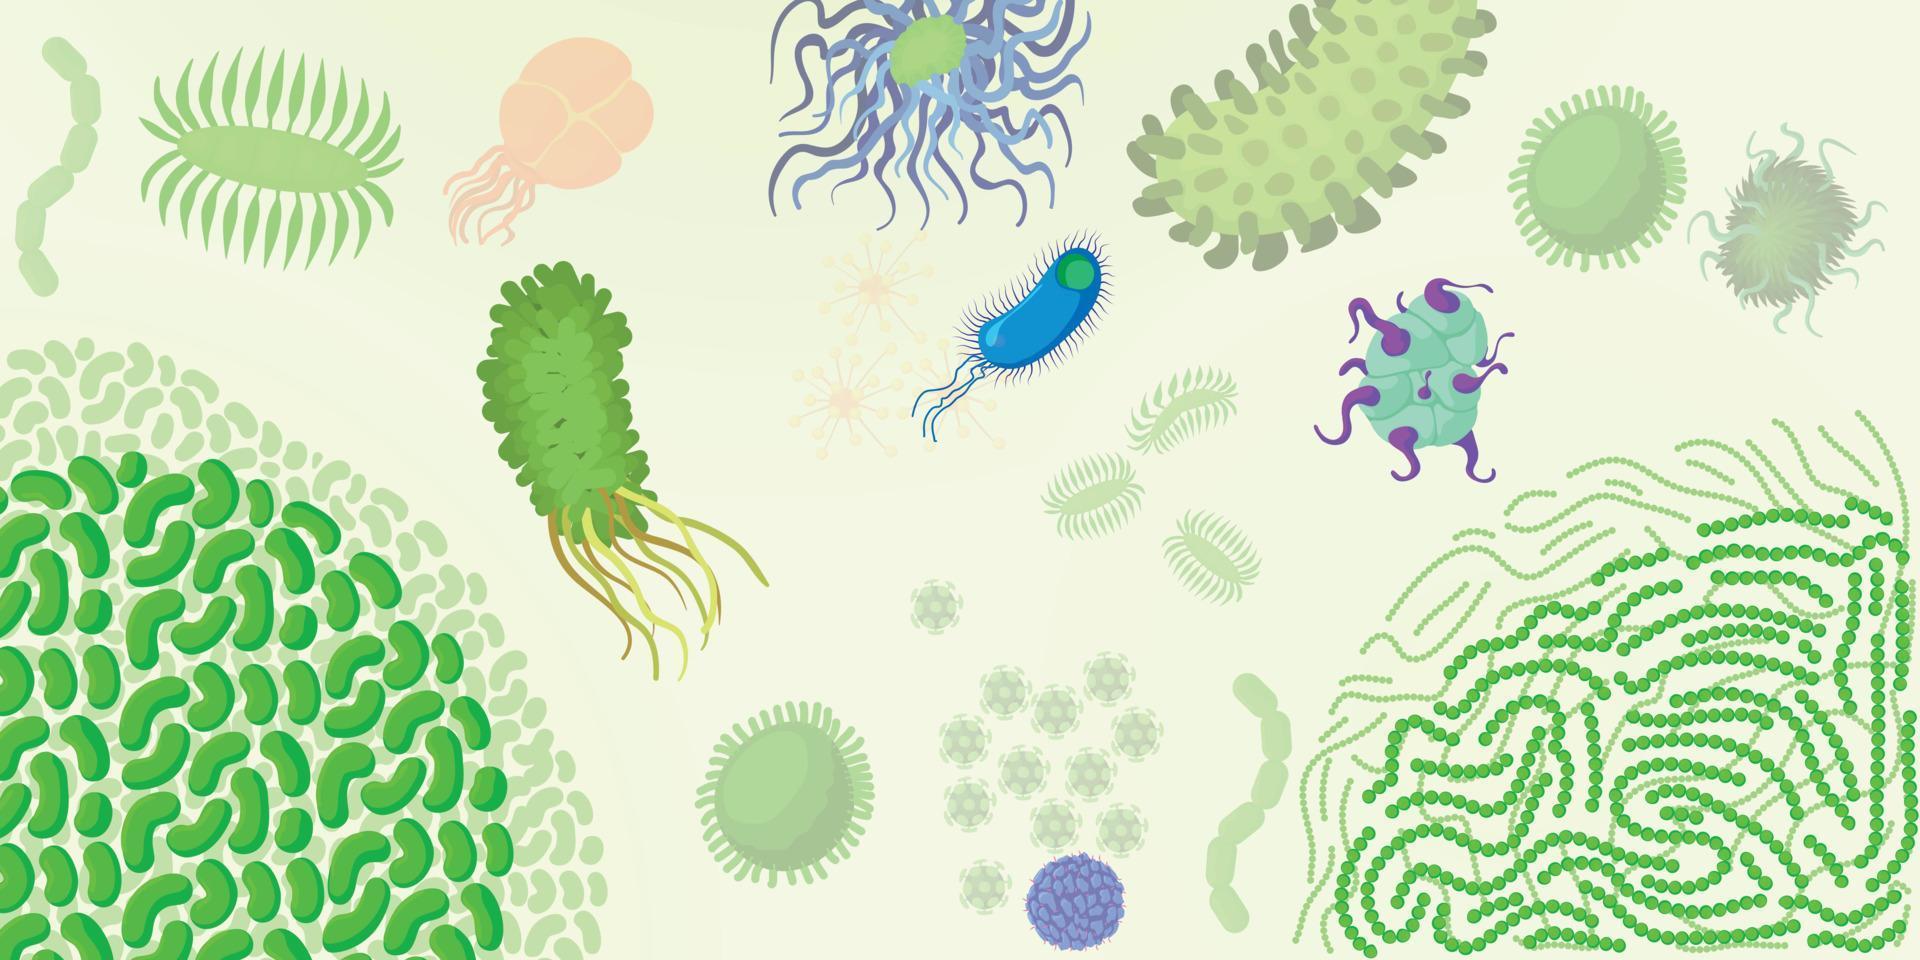 virus bakterie horisontell banner, tecknad stil vektor